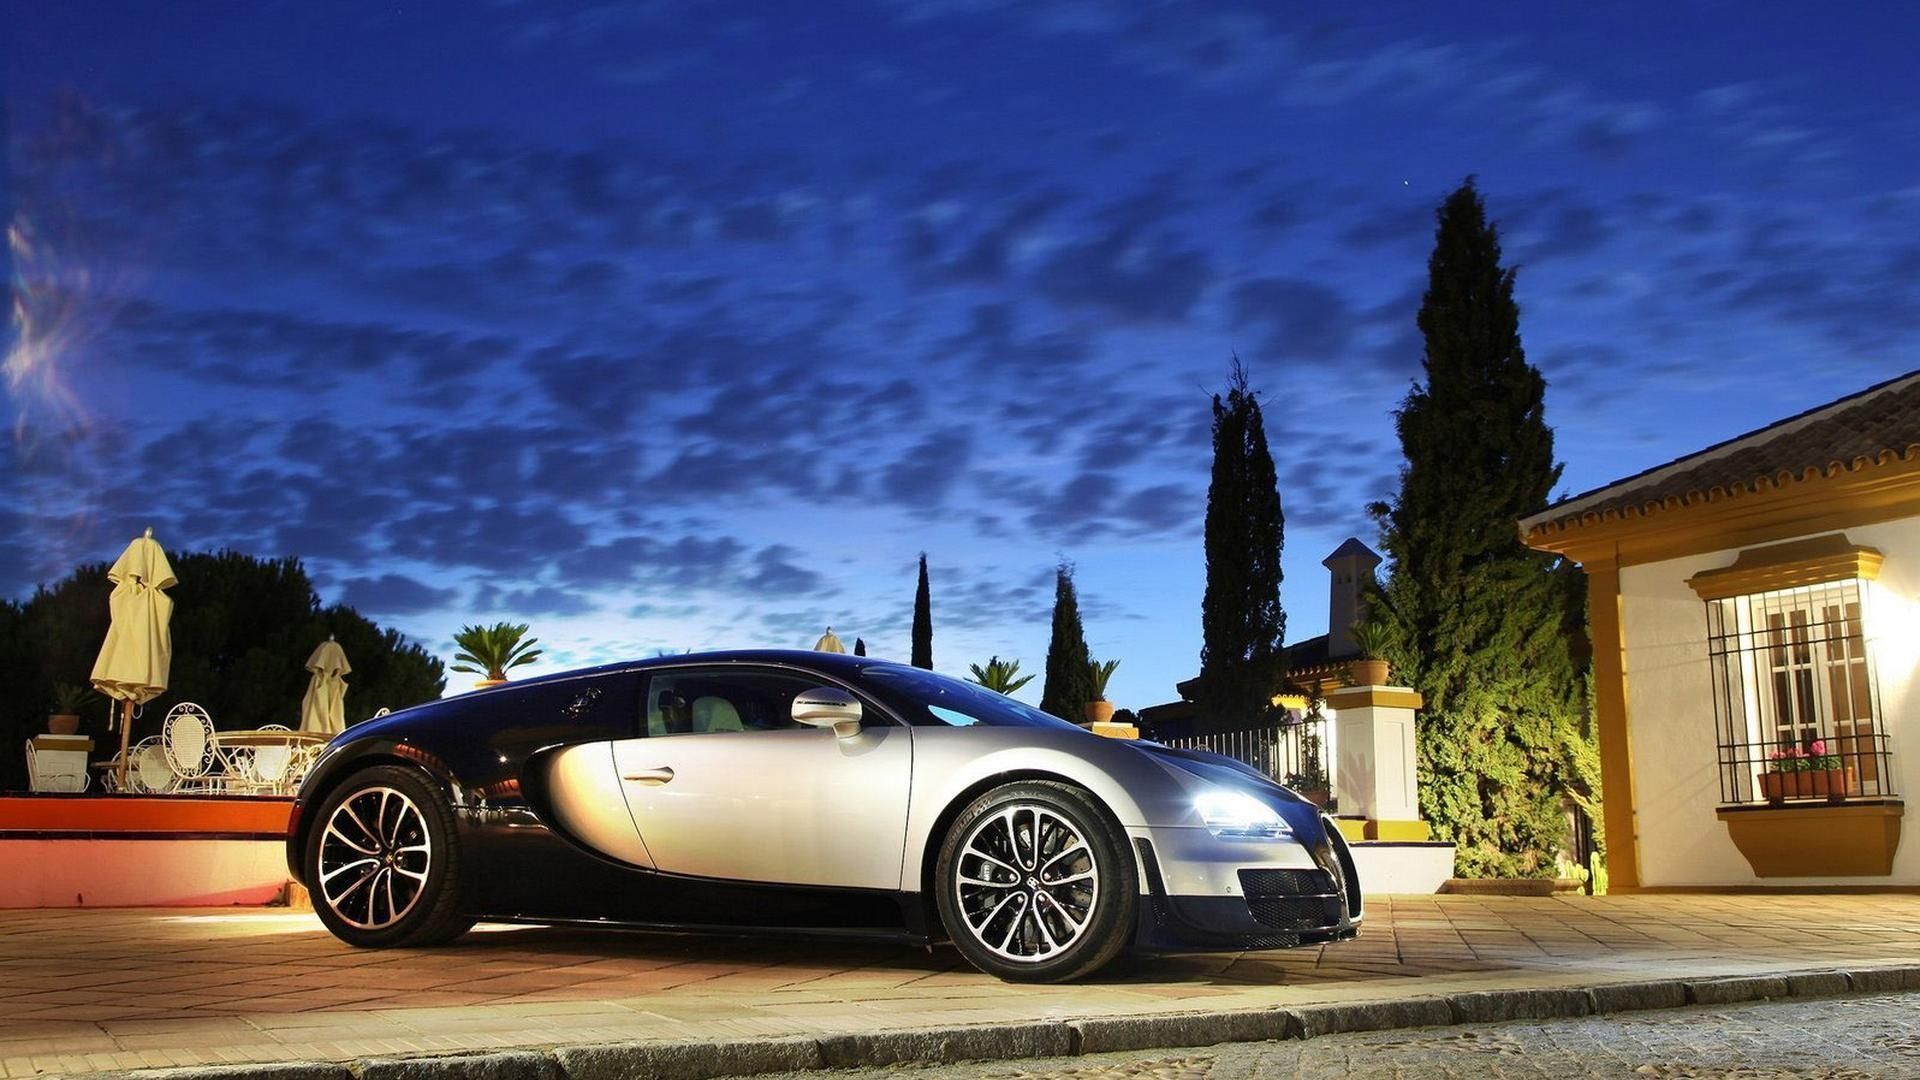 50 Bugatti Veyron wallpaper HD for Laptop